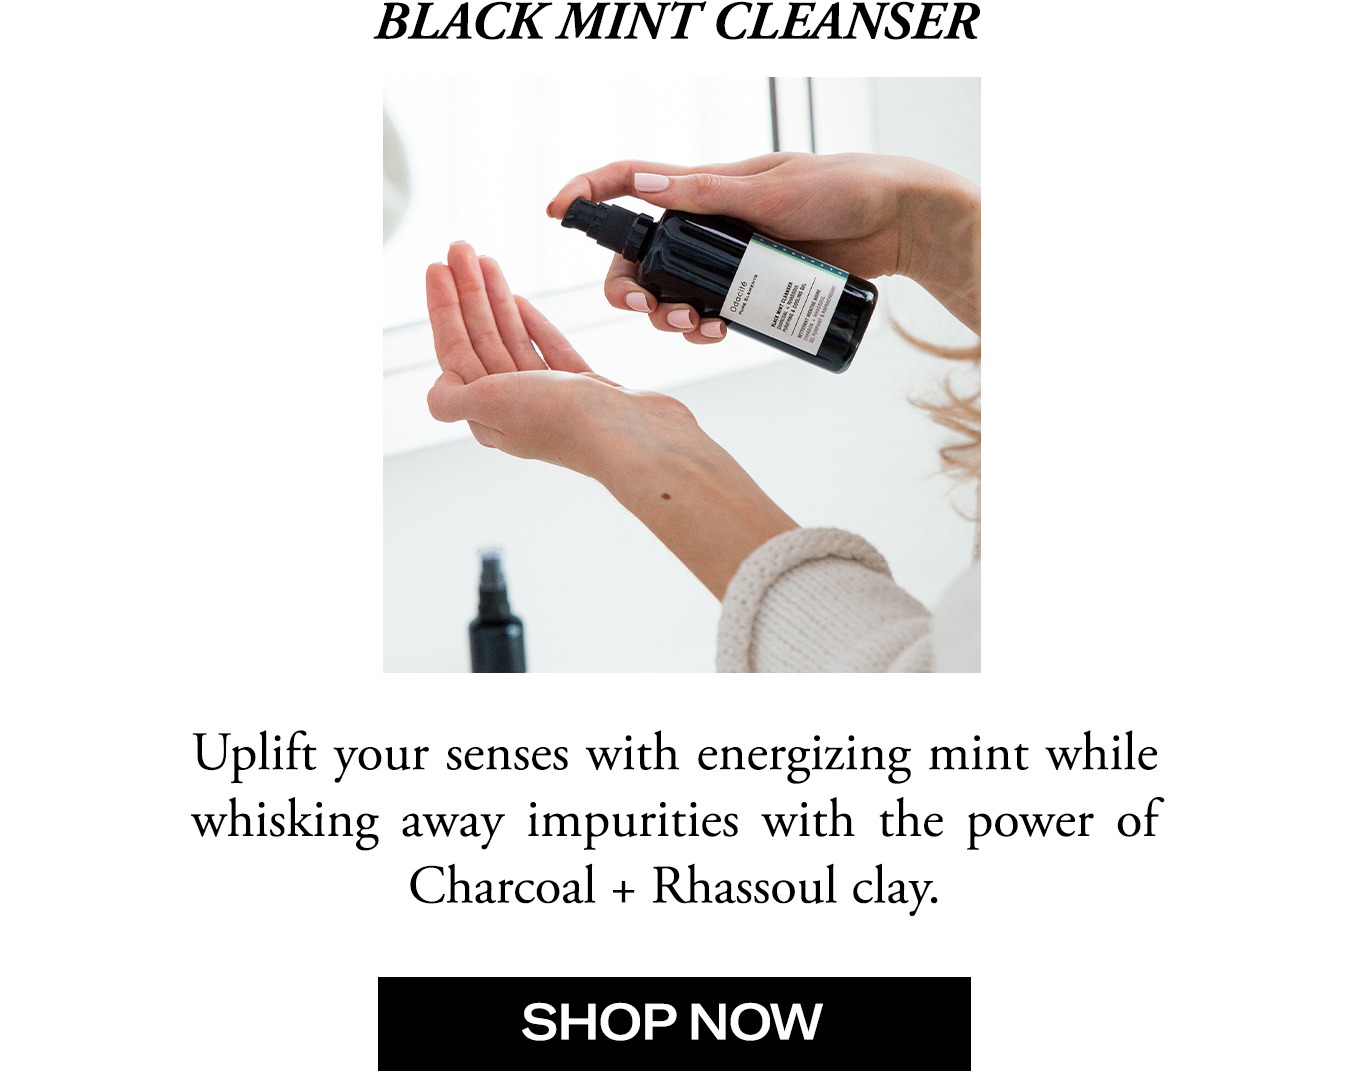 Shop Our Black Mint Cleanser